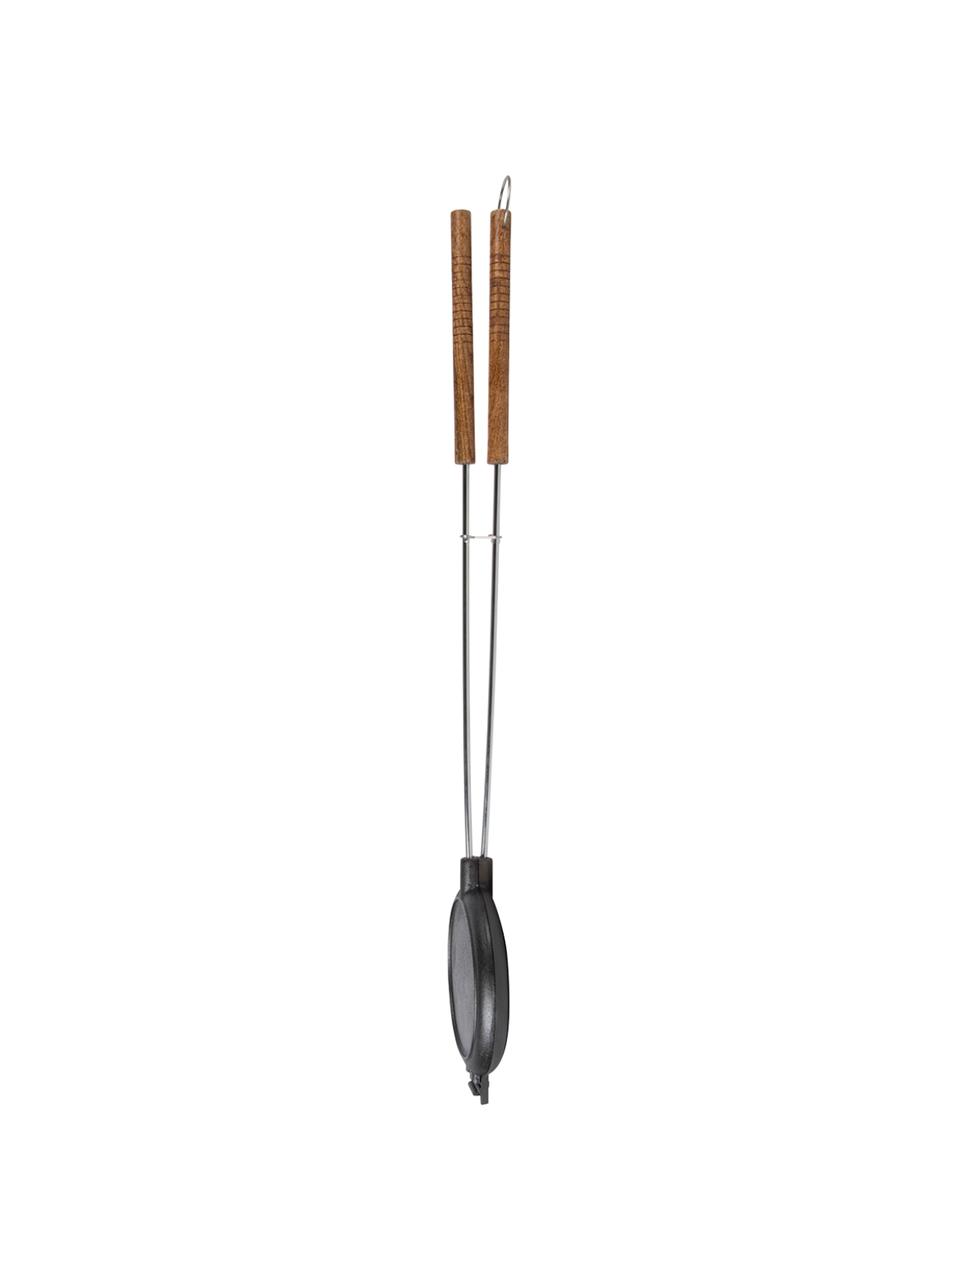 Wafelijzer Gofi met berkenhouten handvat, Zwart, berkenhoutkleurig, zilverkleurig, L 82 cm